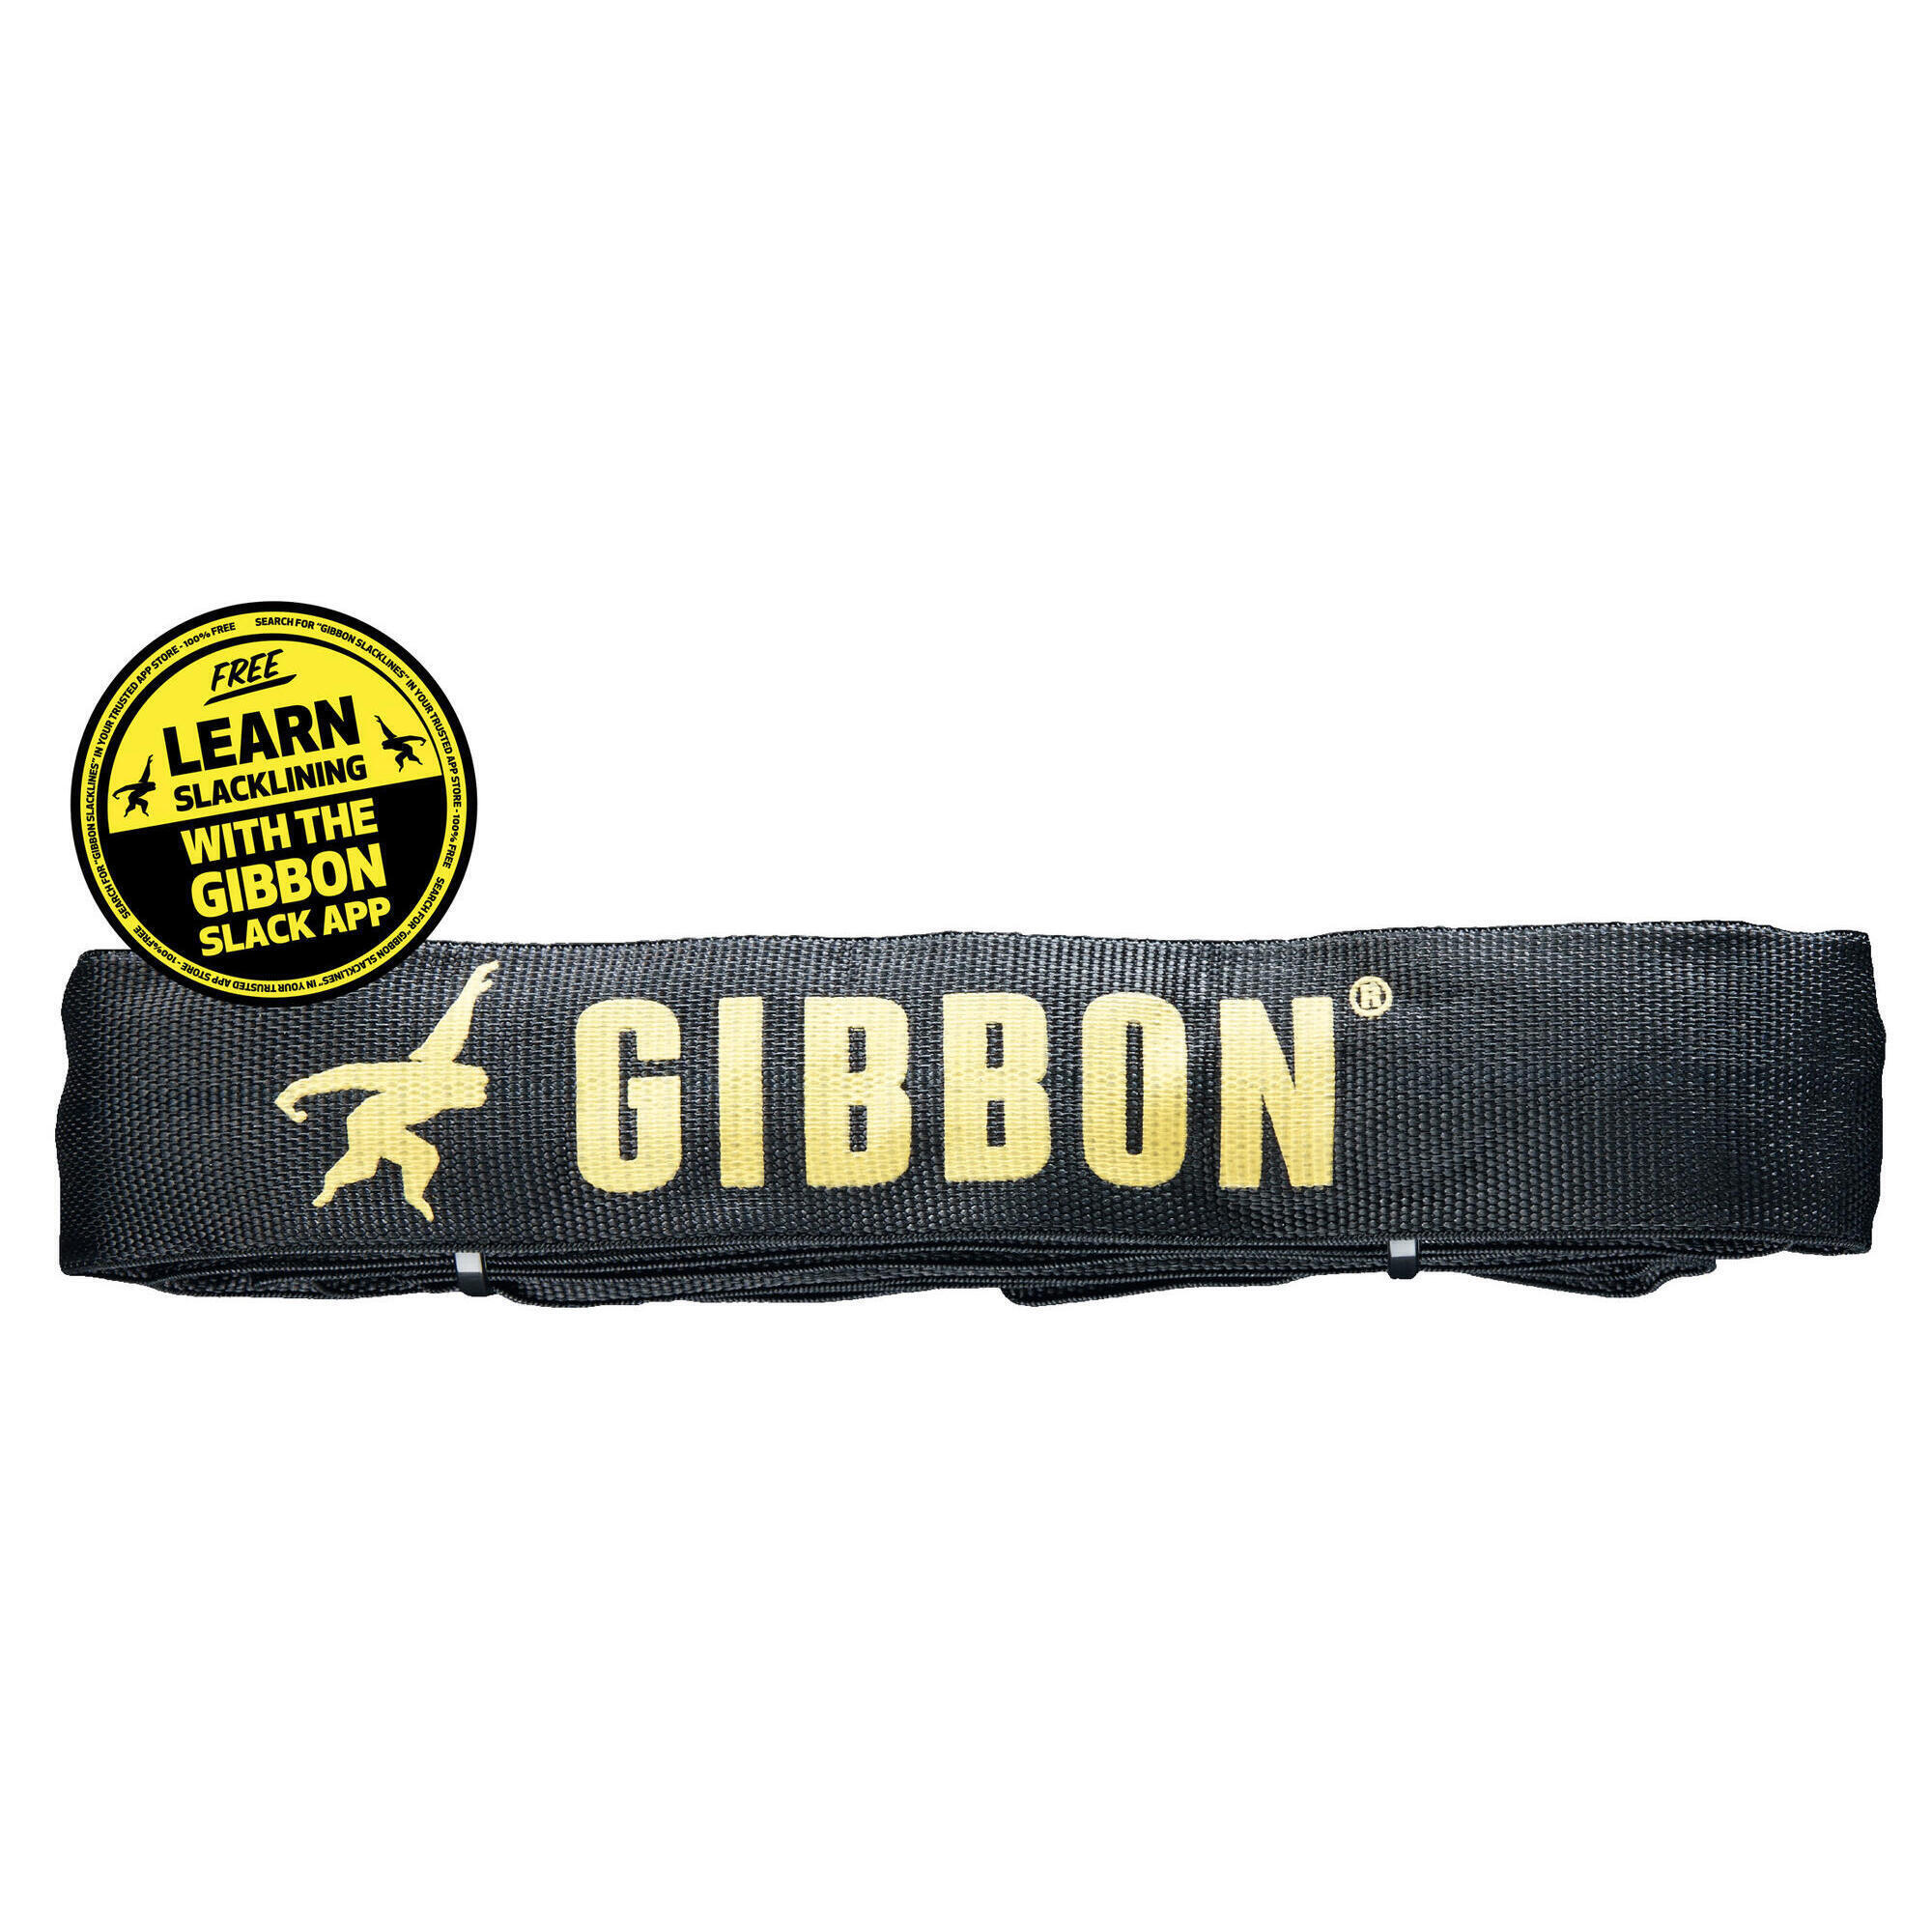 Ленточный строп Gibbon 2 м / 6 футов для слэклайна, черный